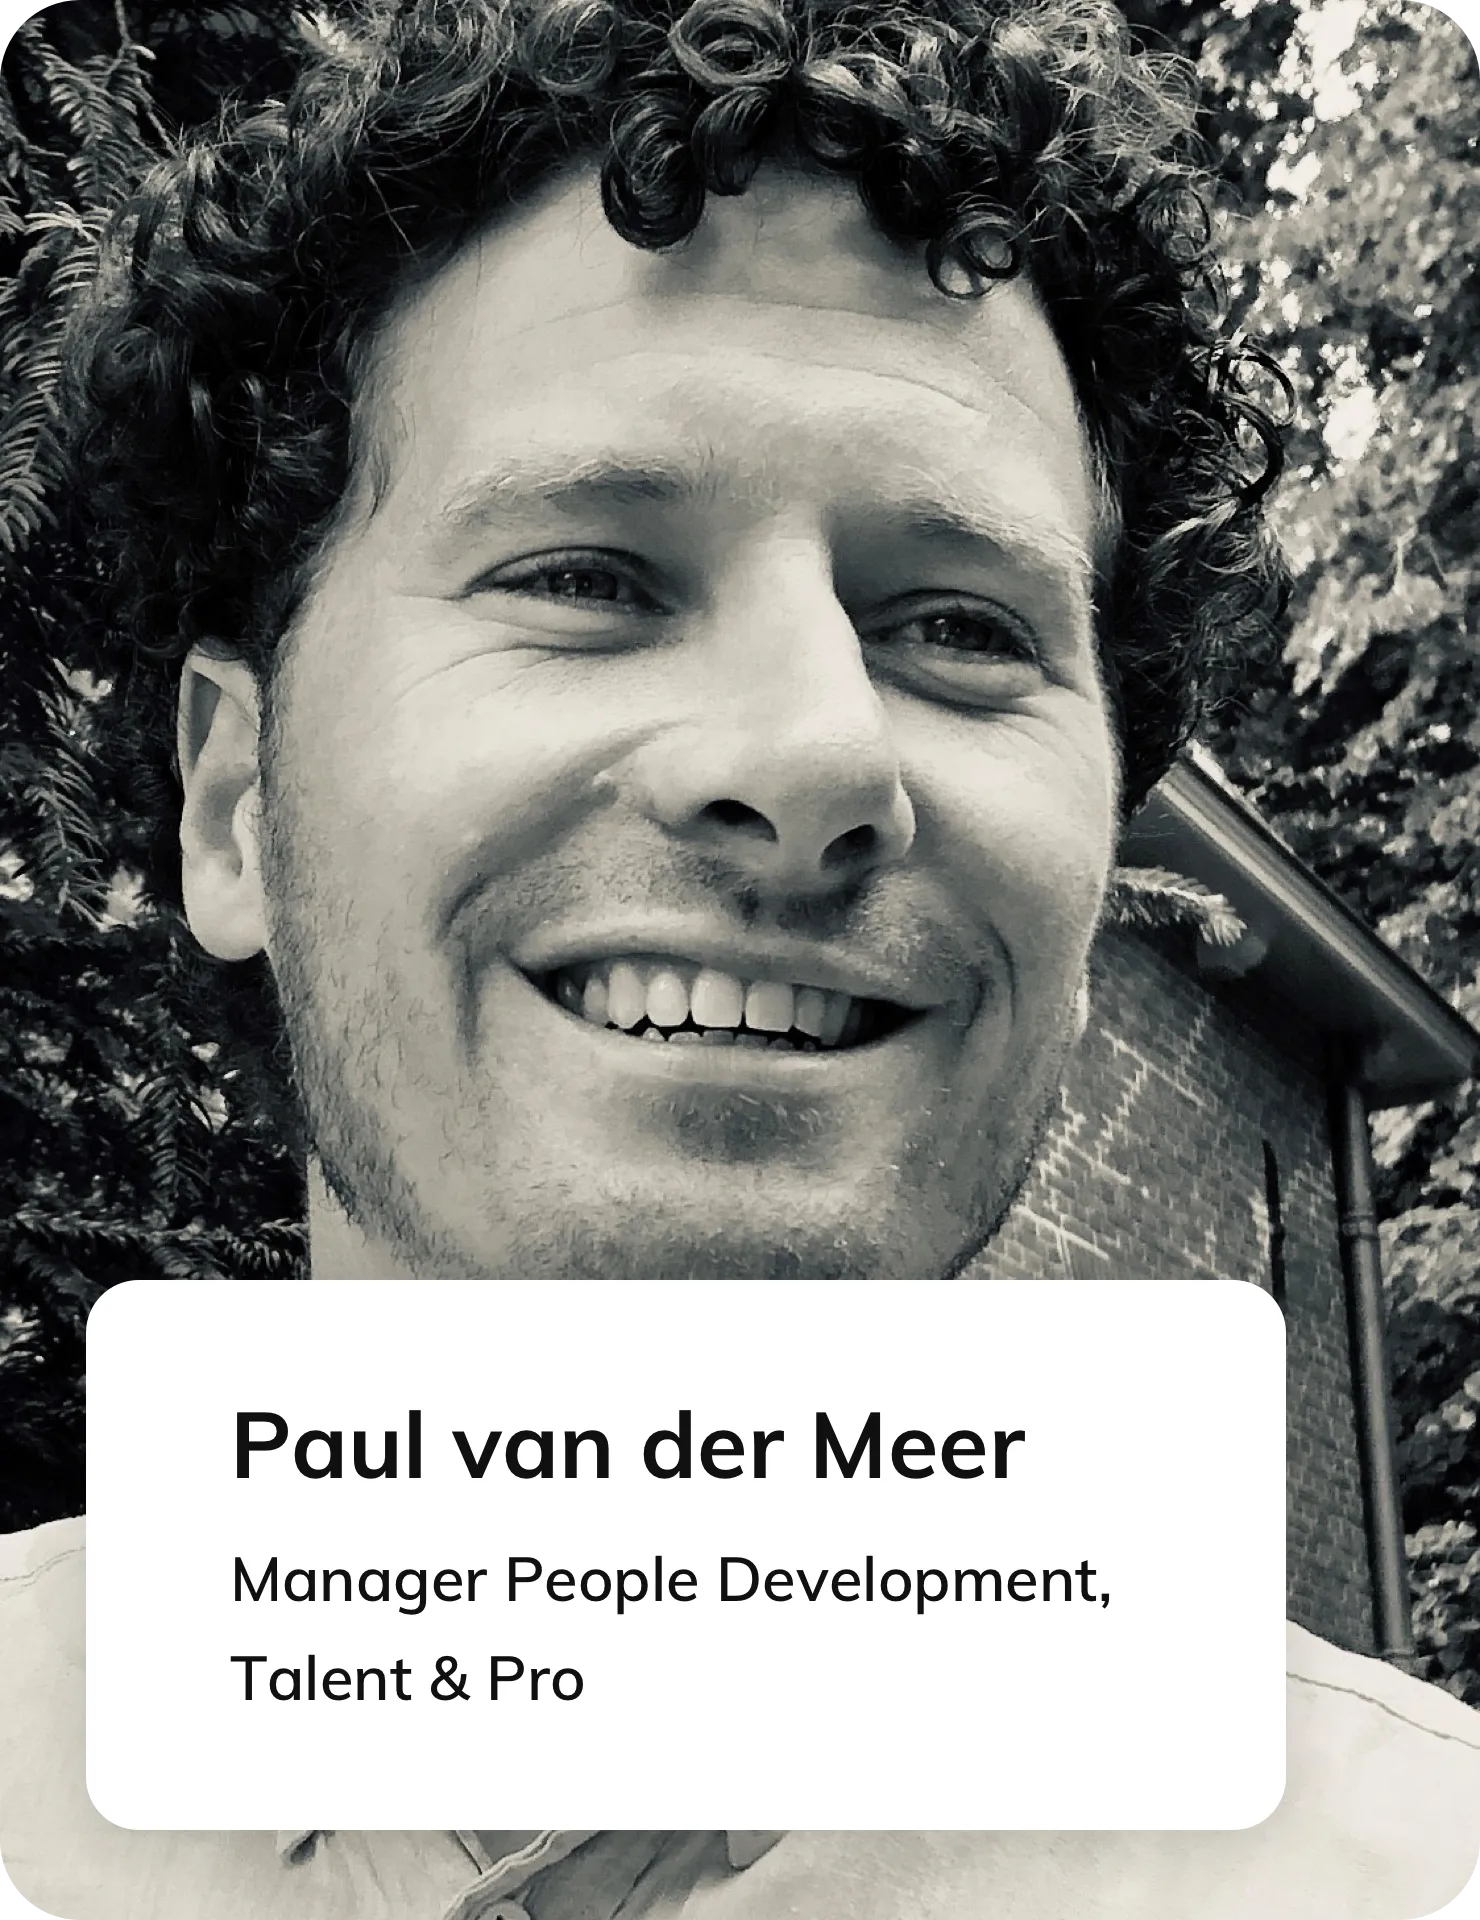 Paul van der Meer, Manager People Development bij Talent & Pro